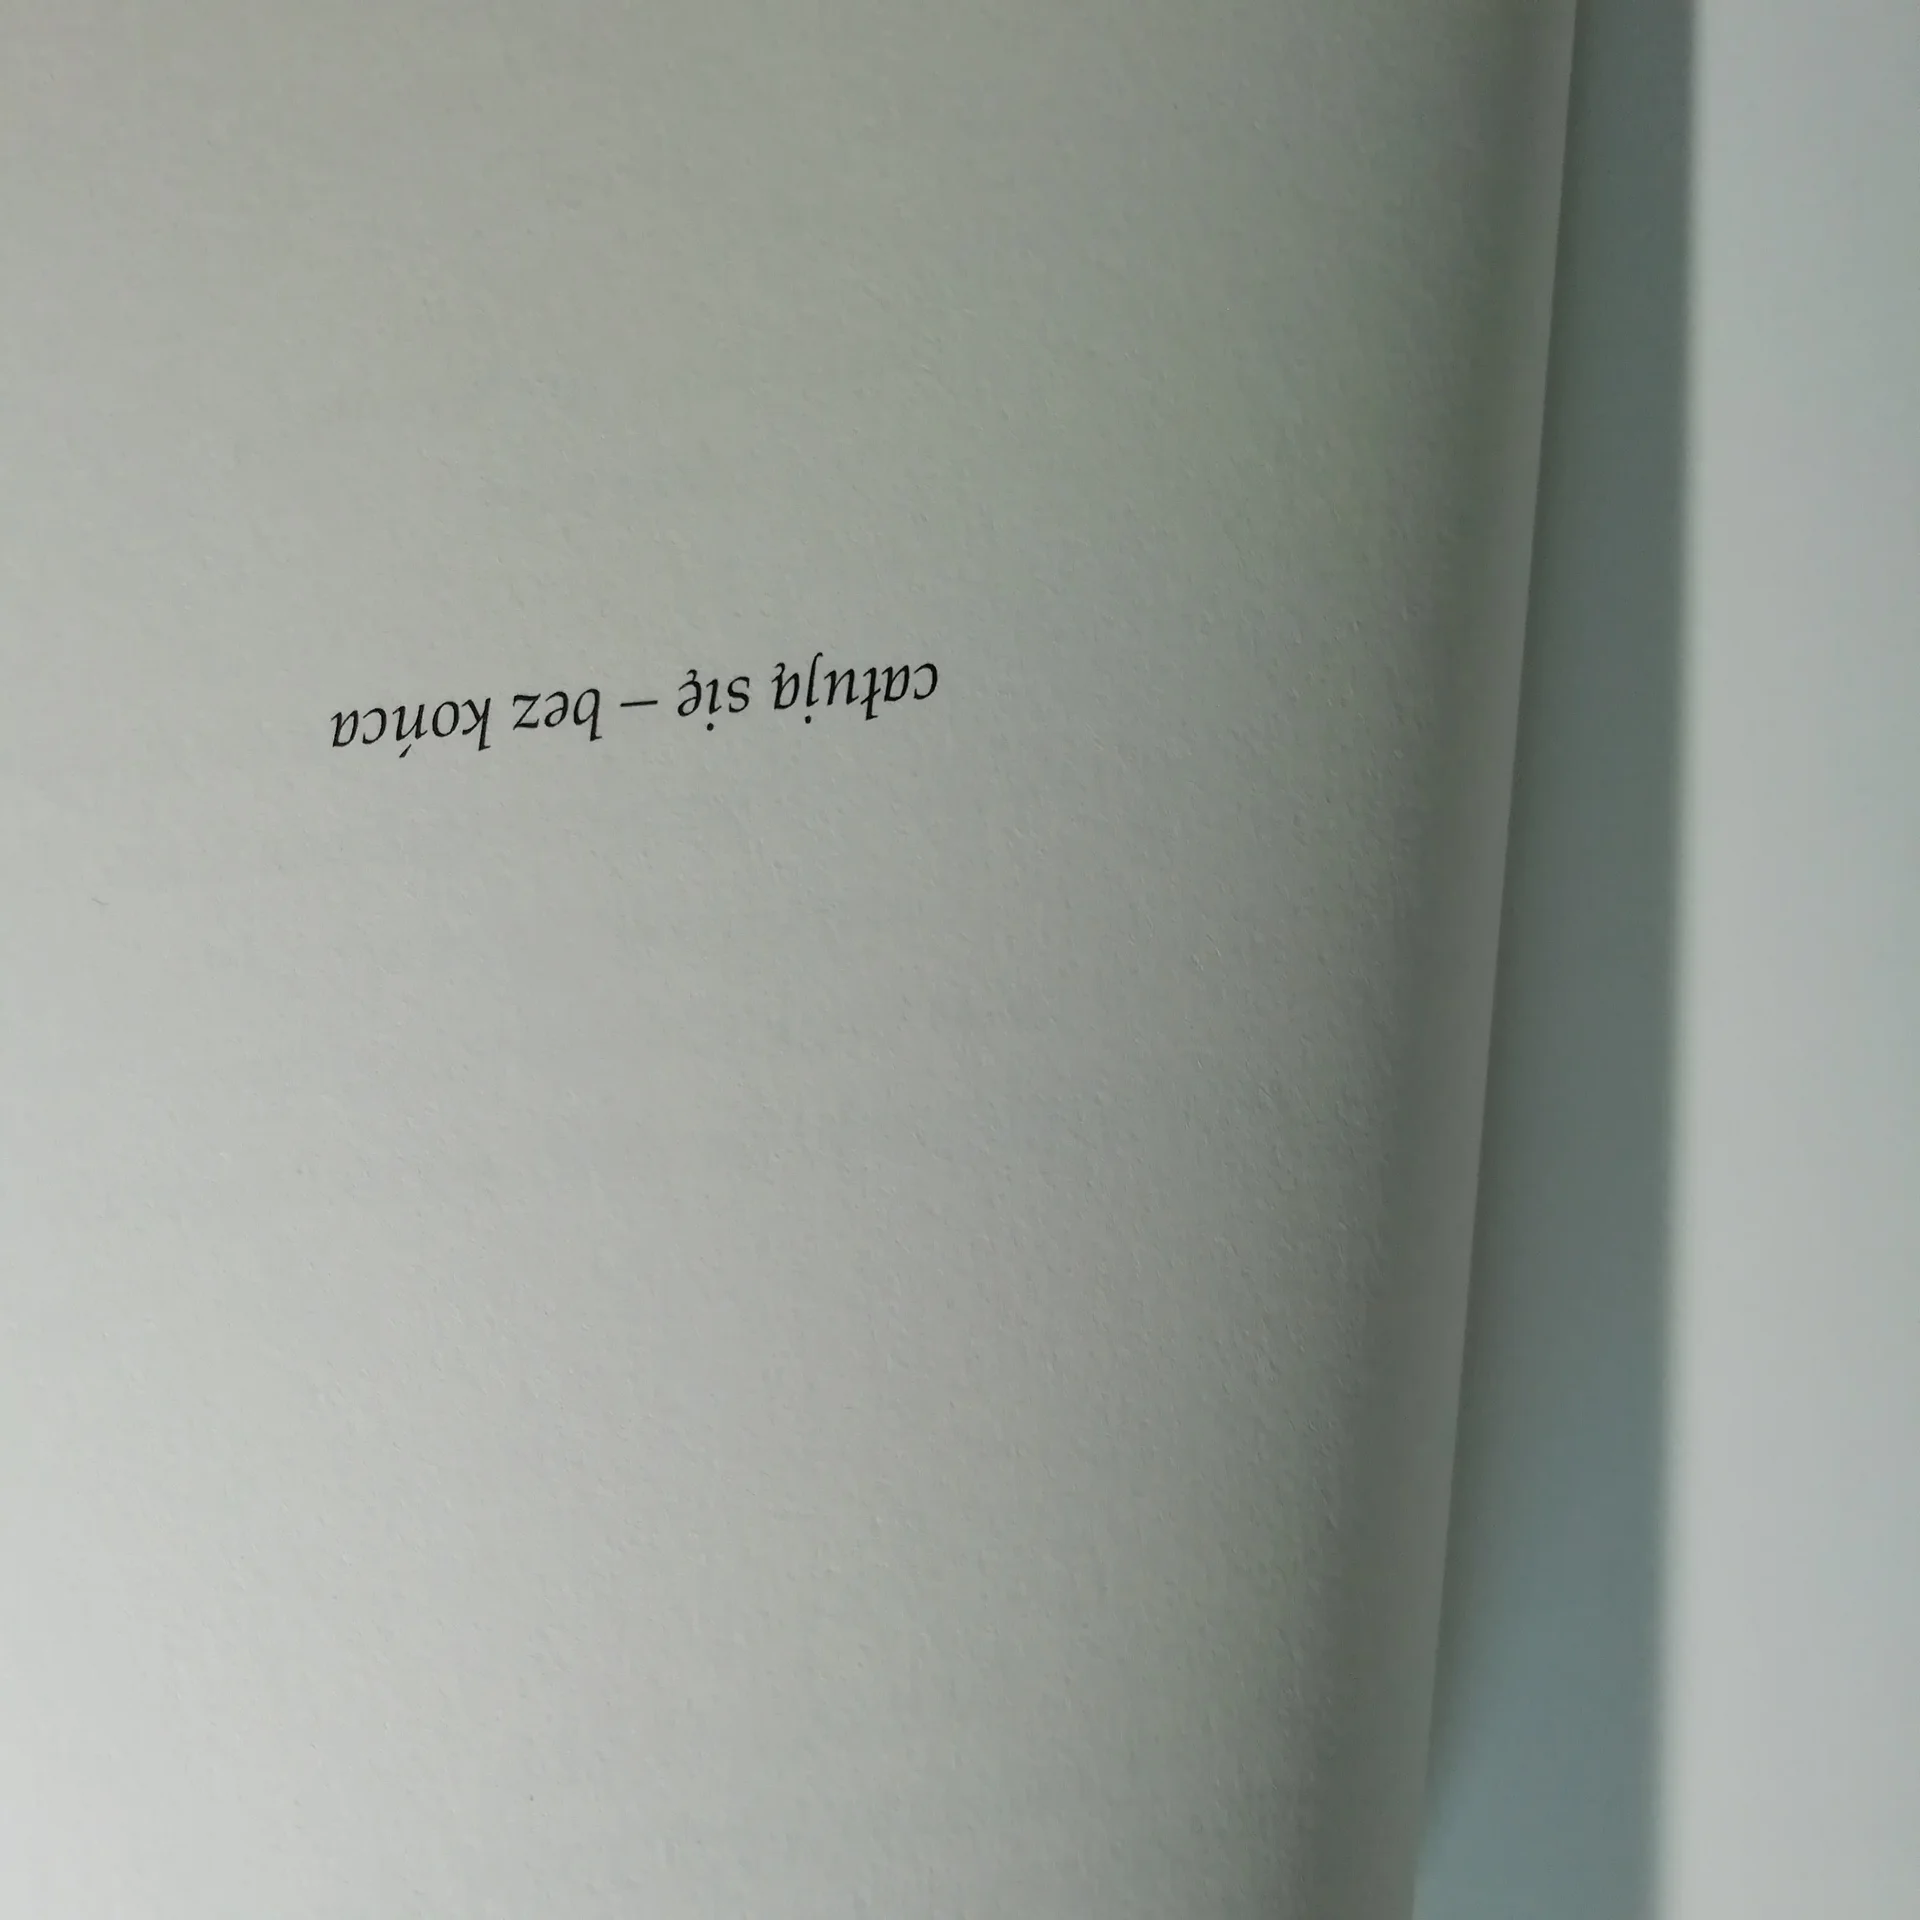 Widoczny fragment otwartej książki - napis "całują się - bez końca".